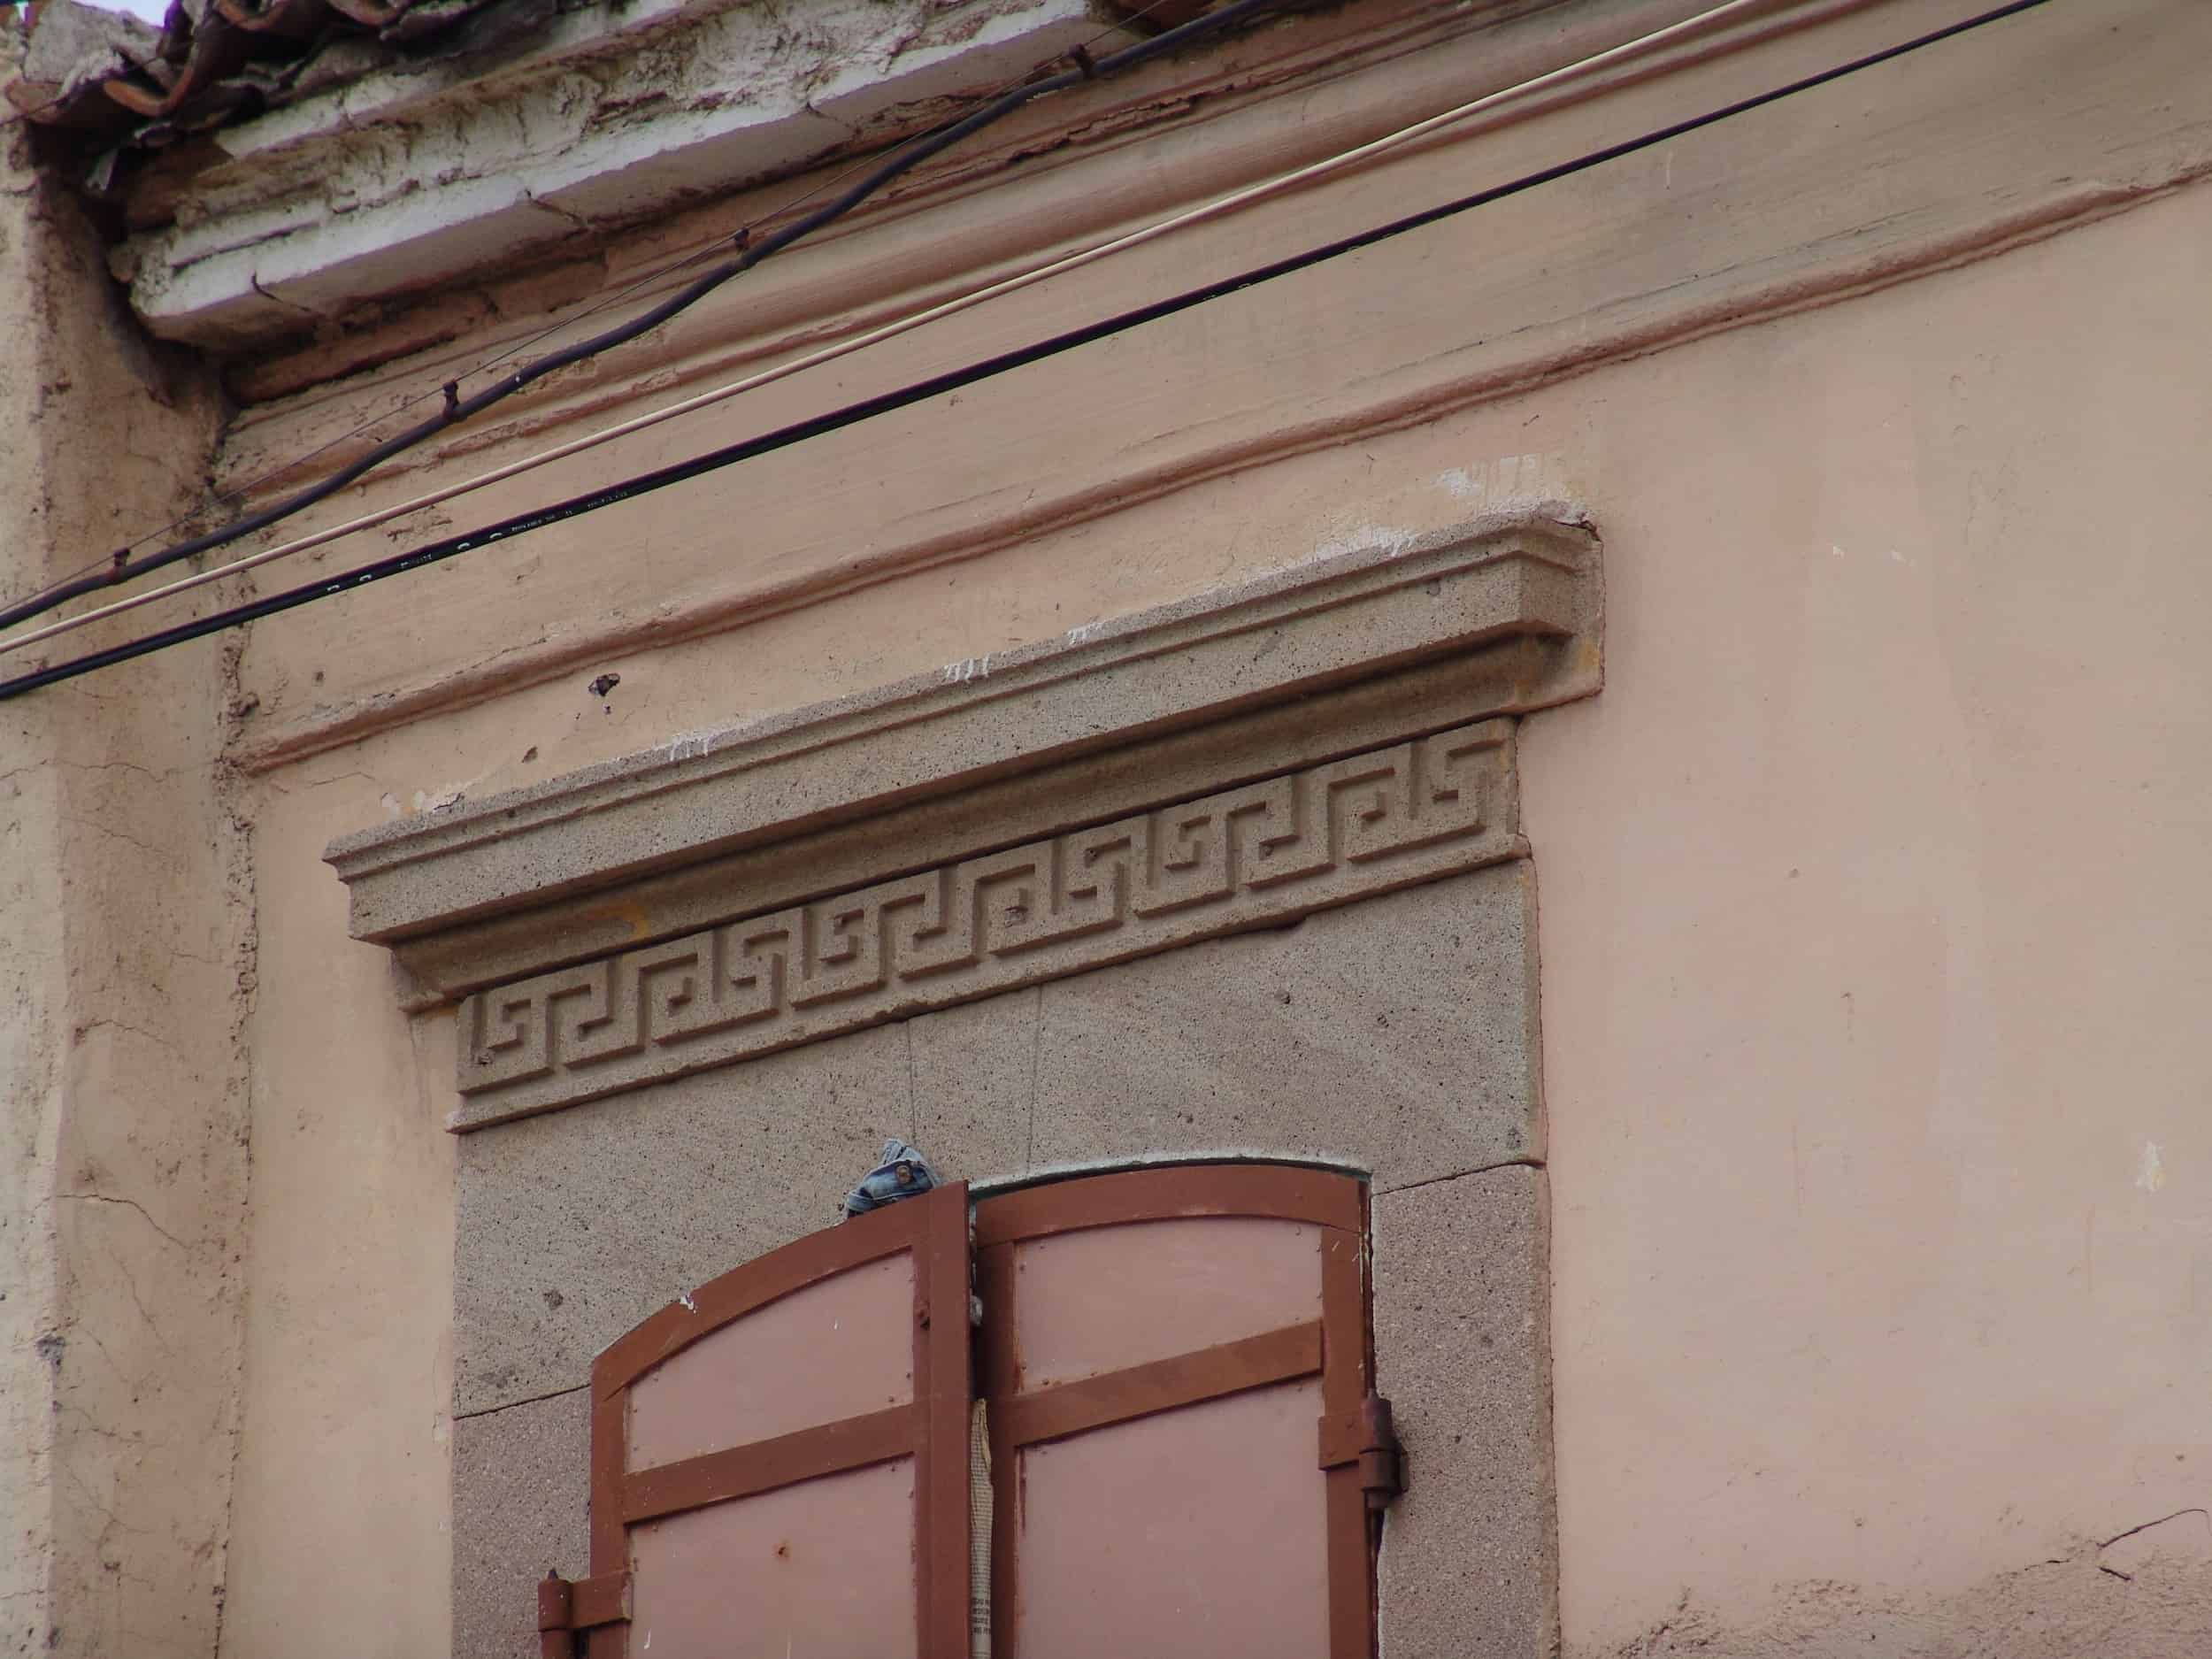 Greek key above a window